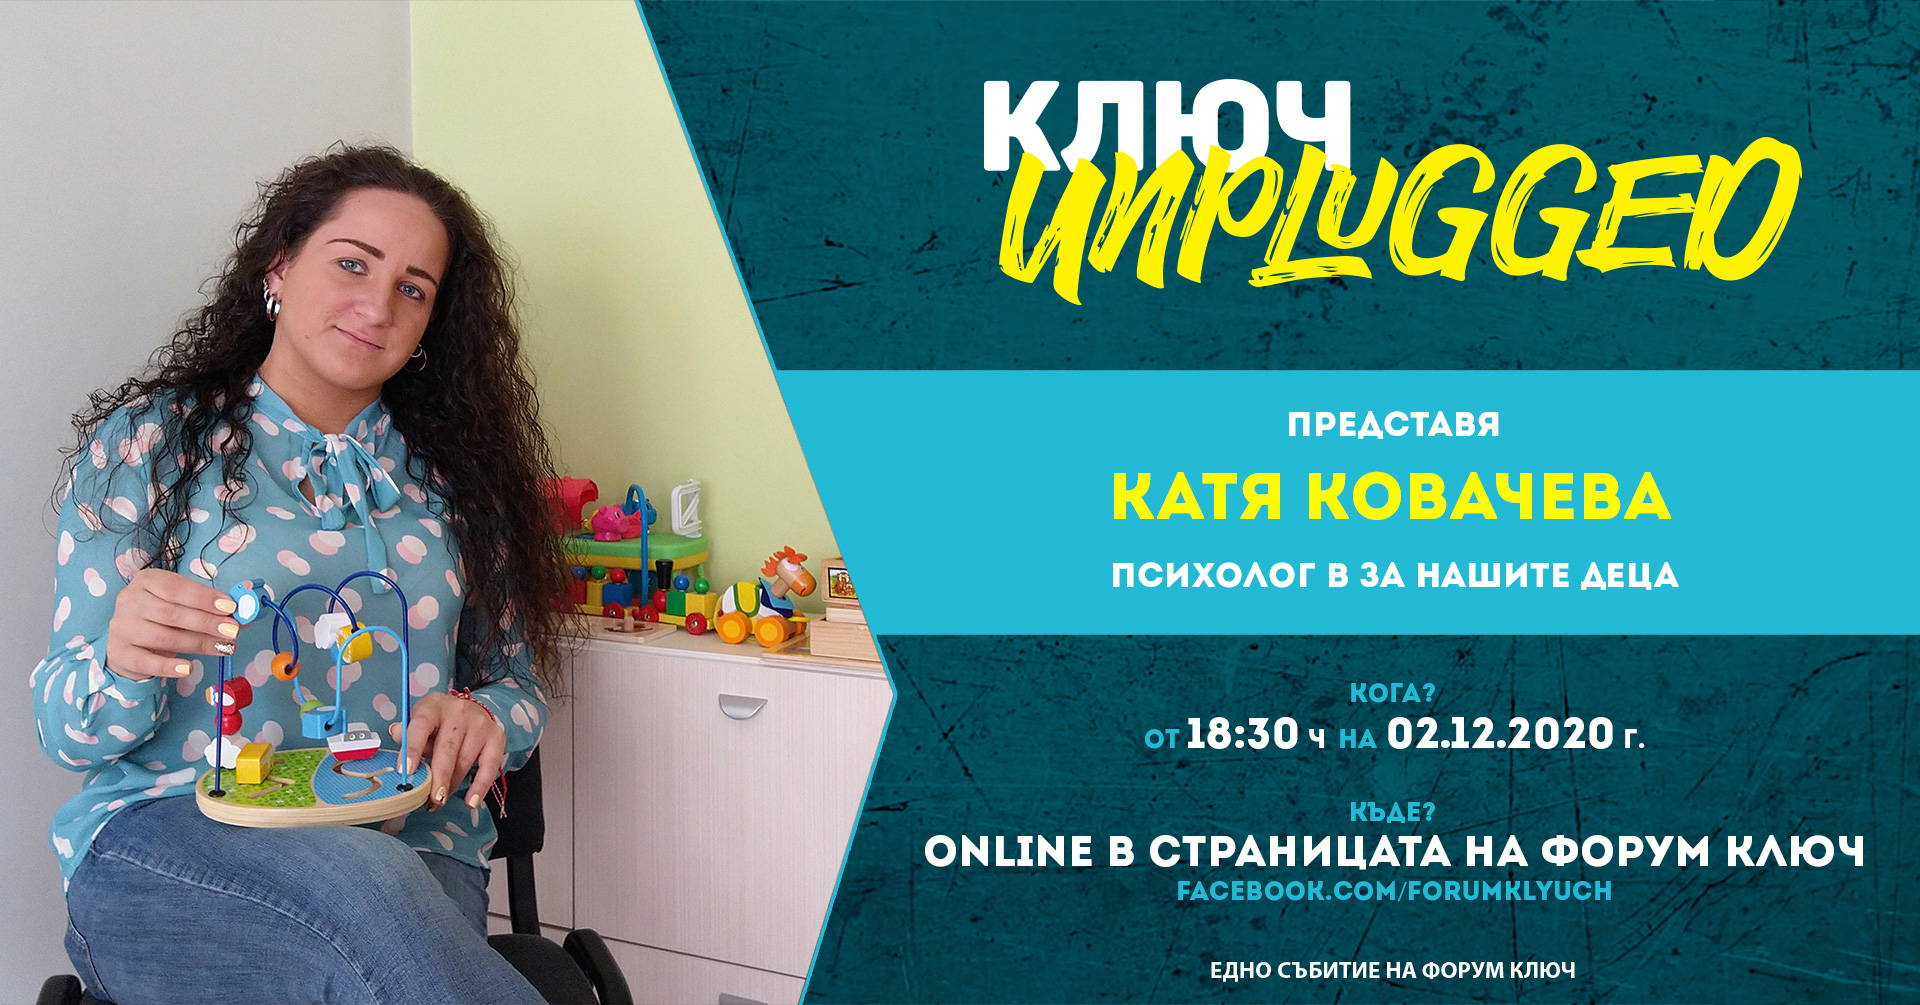 Online: КЛЮЧ Unplugged представя Катерина Ковачева